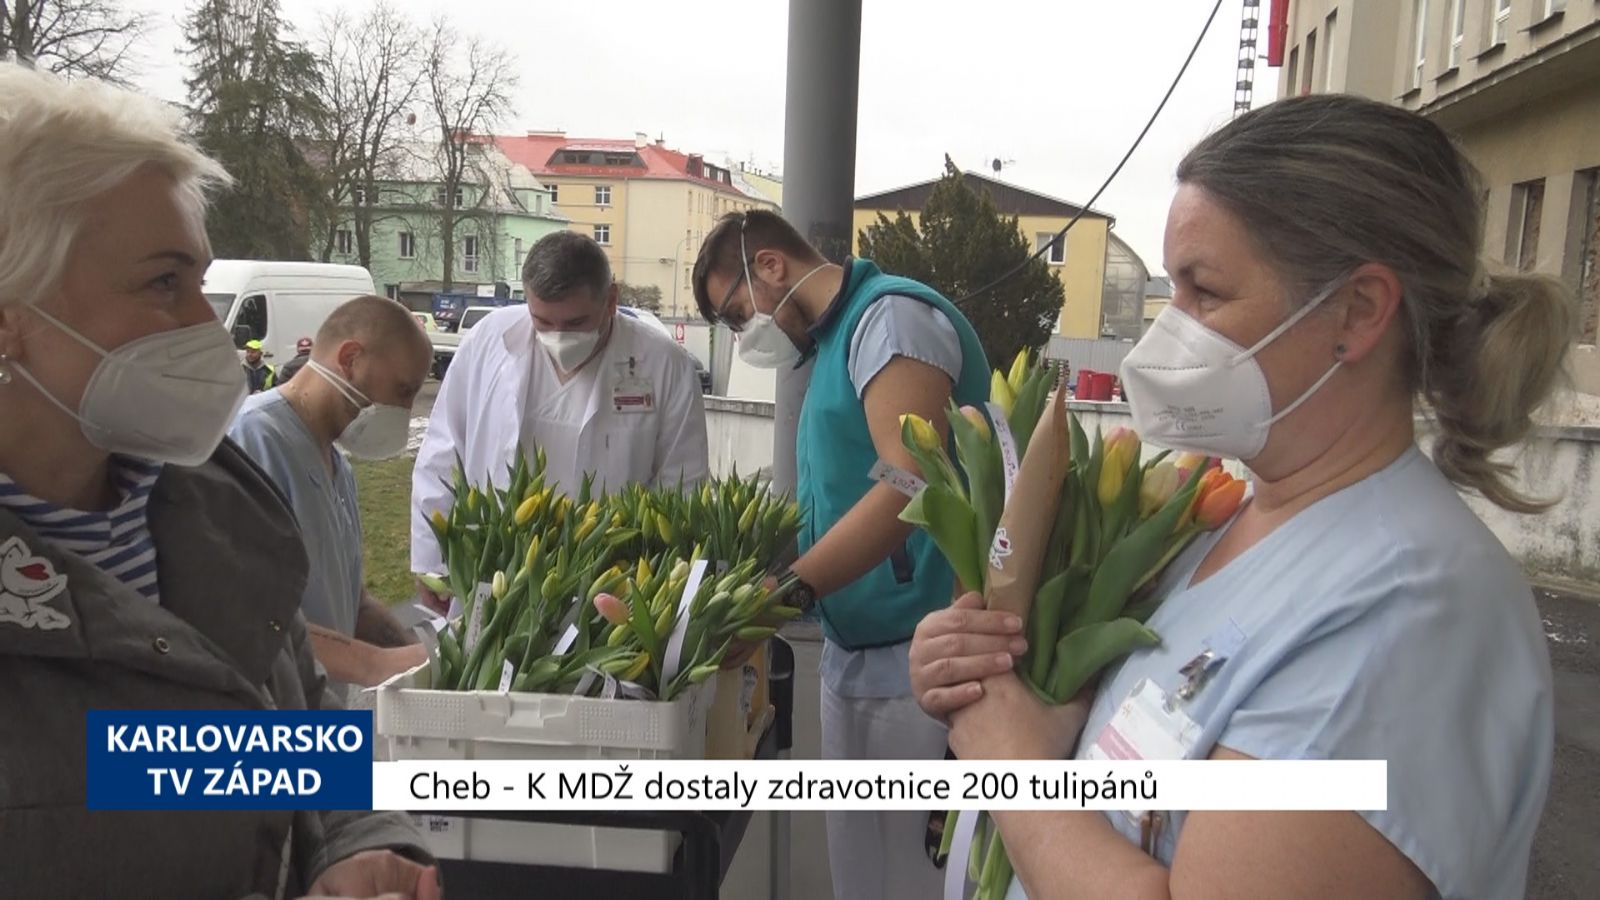 Cheb: K MDŽ dostaly zdravotnice 200 tulipánů (TV Západ)